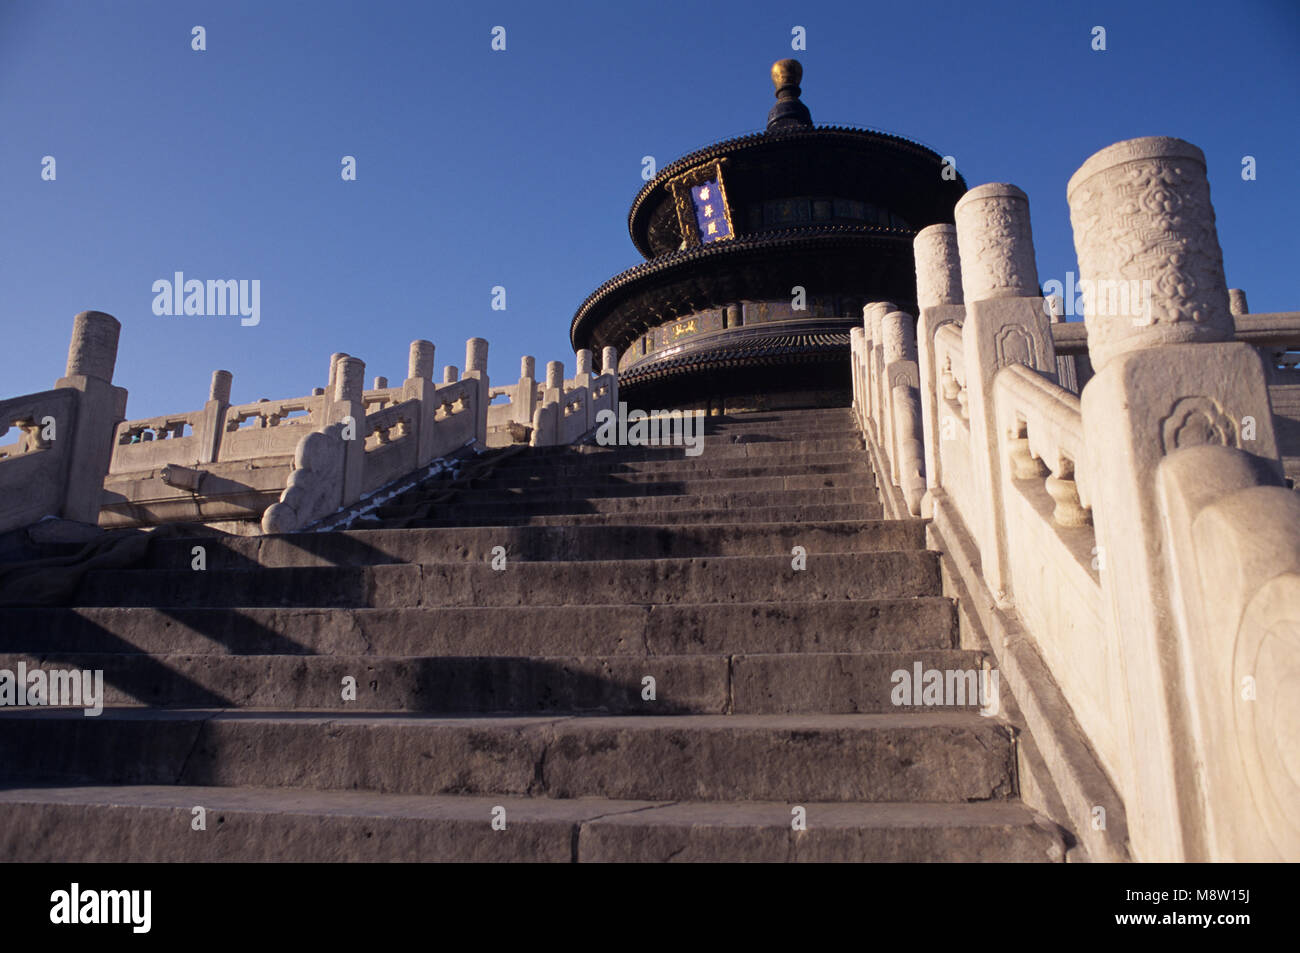 Chine, République populaire de Chine, Pékin, Temple du Ciel, autel du ciel, temple Taoïste Banque D'Images